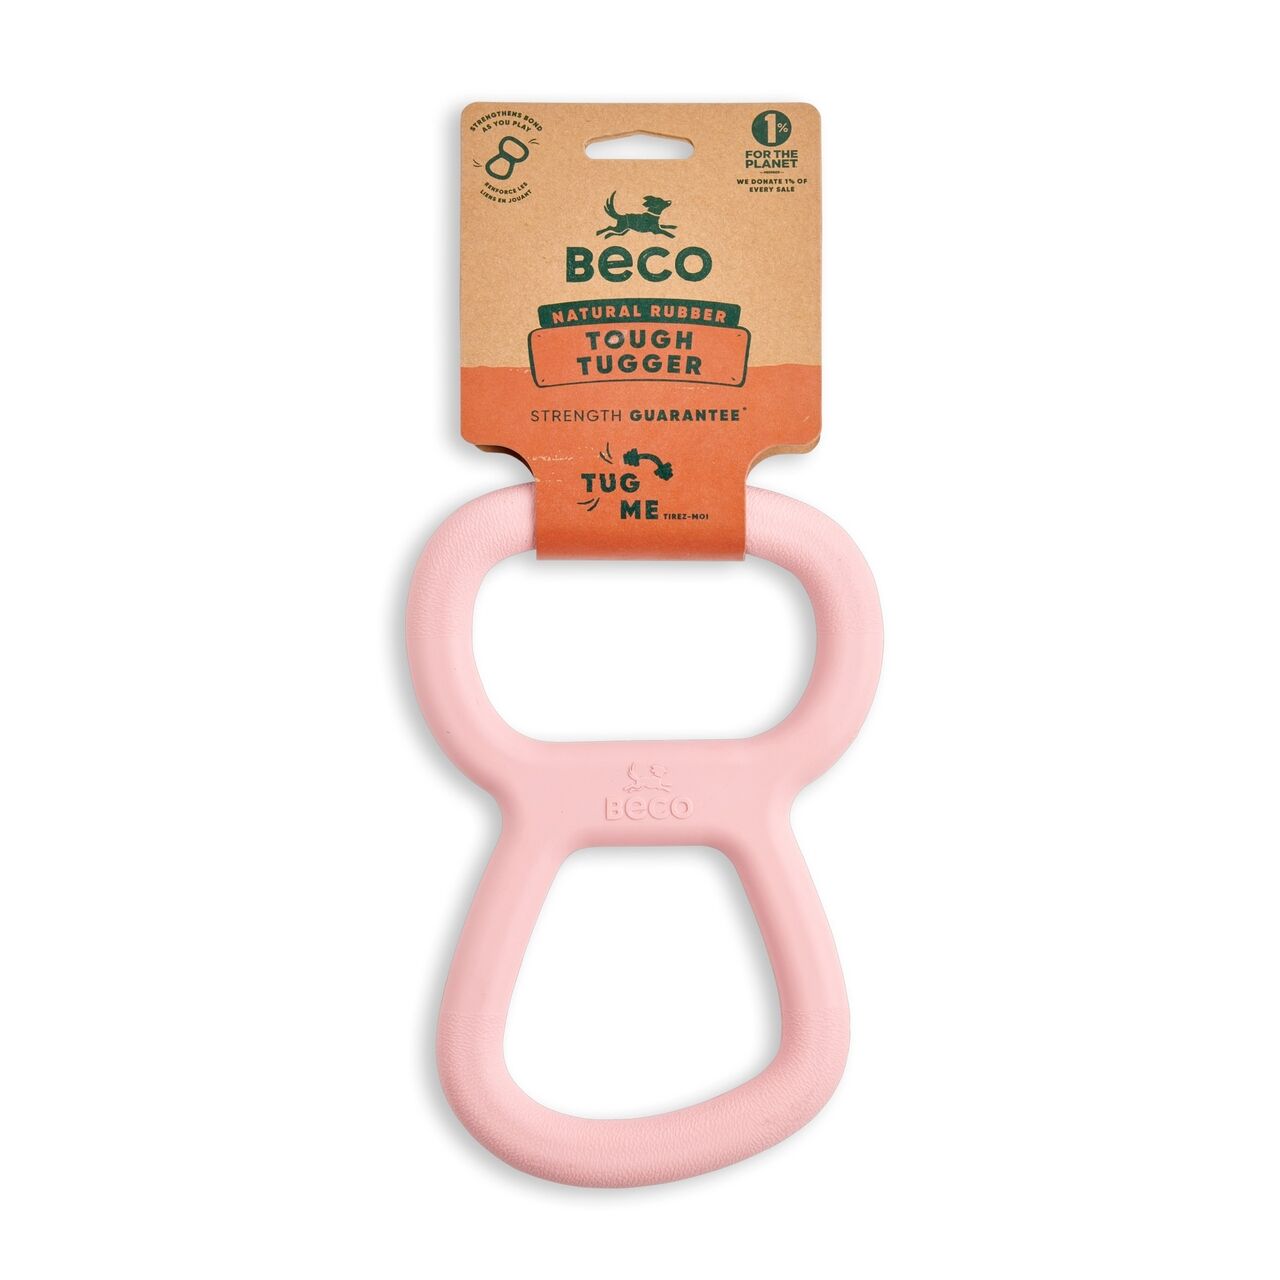 Beco-Tough-Tugger-Zerrspielzeug-rosa-aus-natuerlichem-Kautschuk-mit-Verpackung-BT-75636